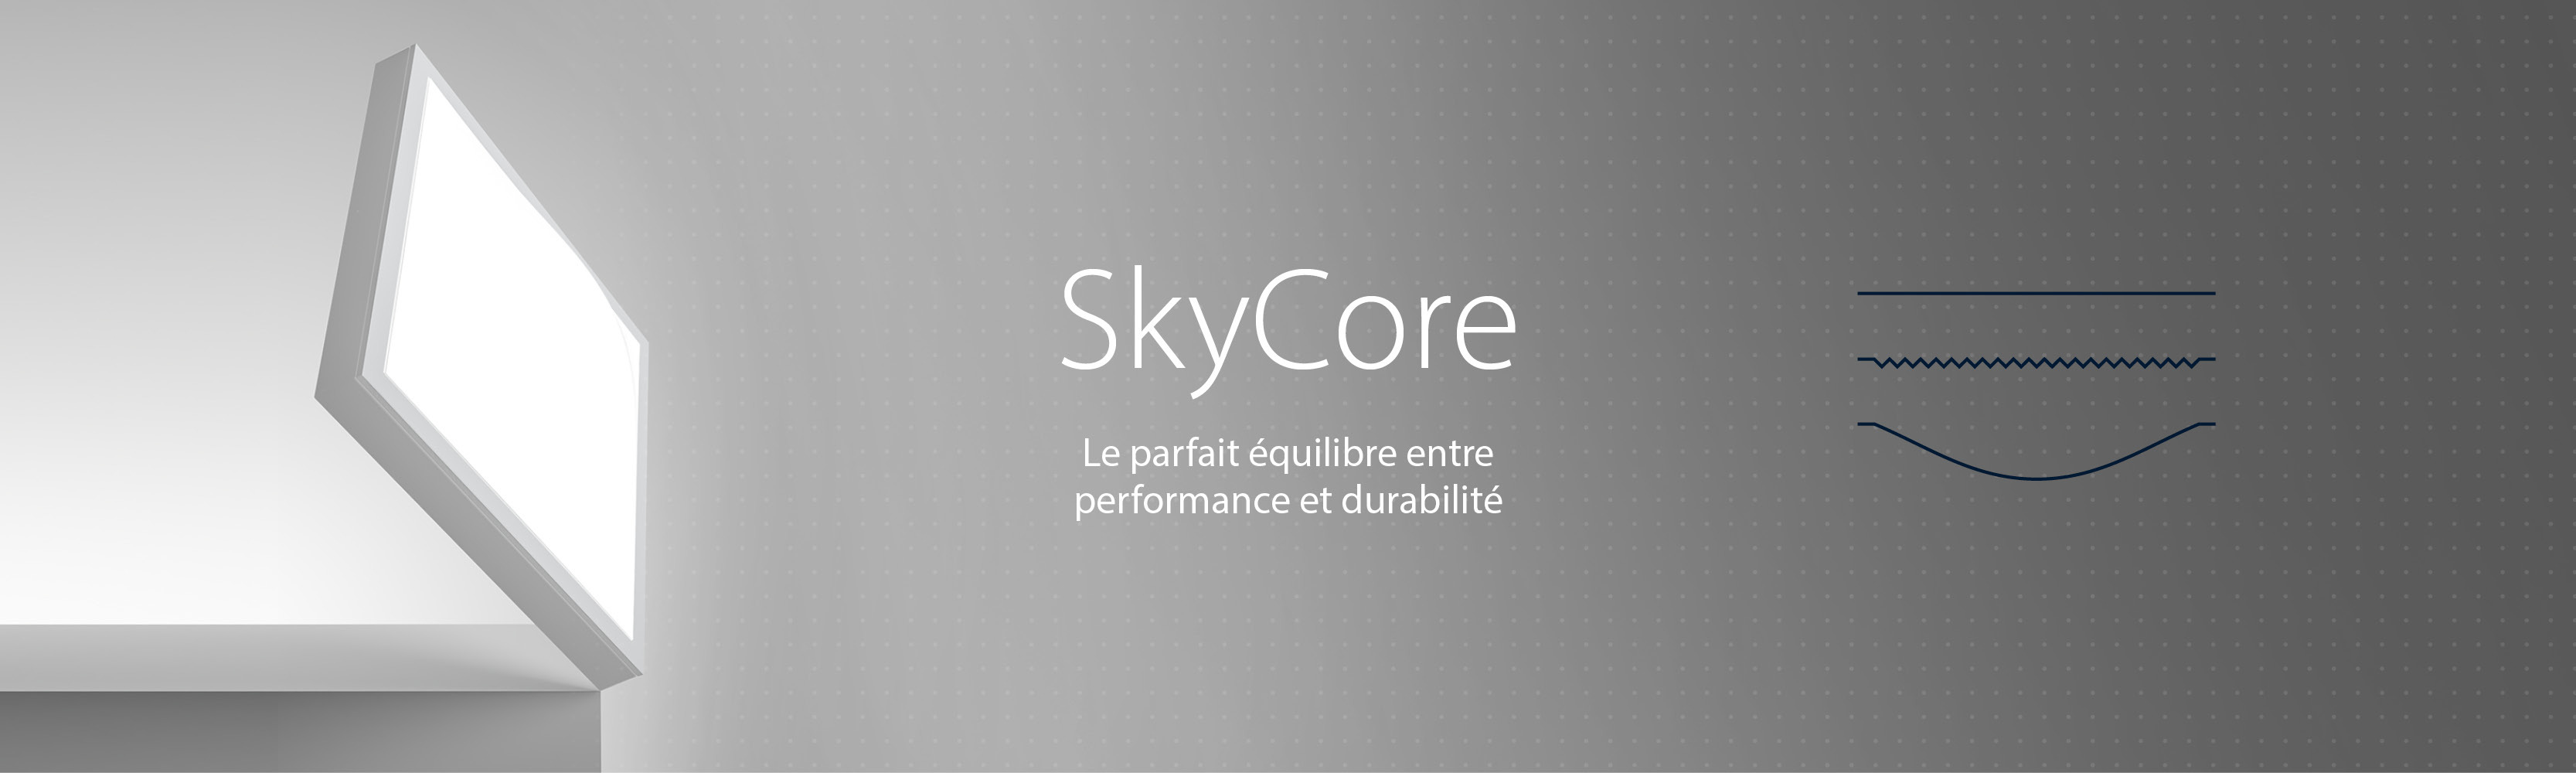 SkyCore - Le parfait équilibre entre performance et durabilité